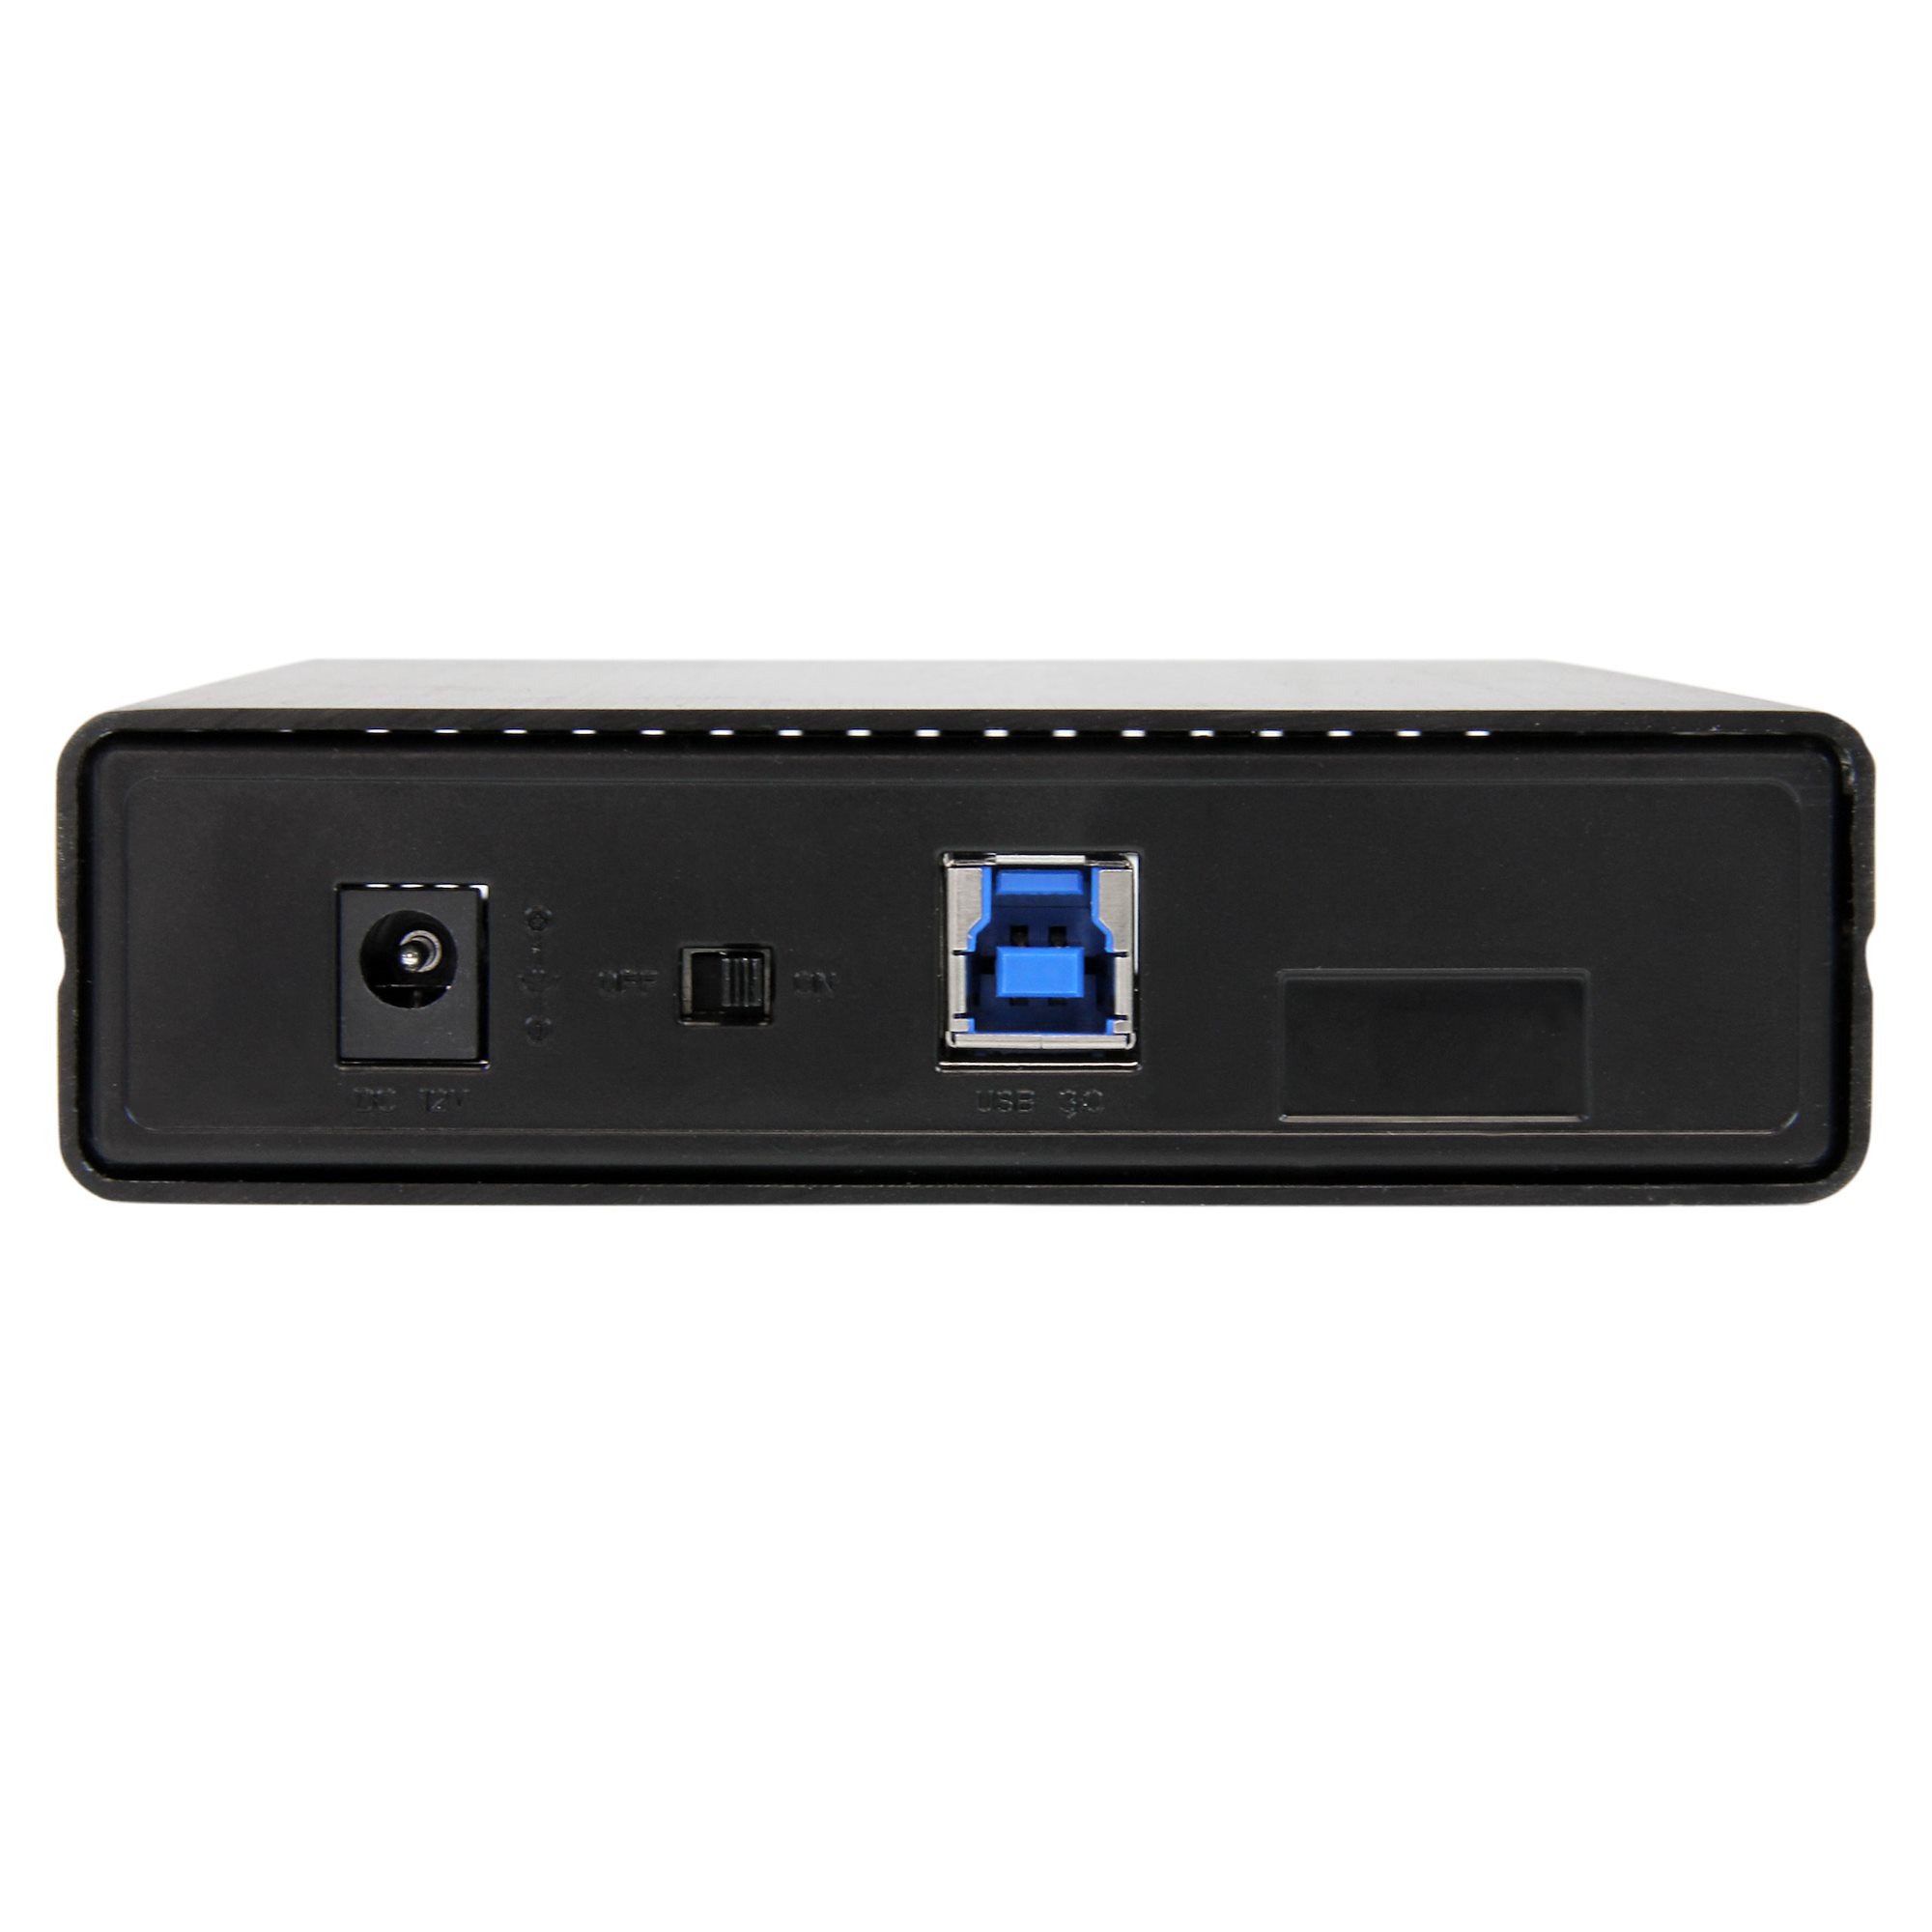 StarTech.com Boîtier disque dur externe USB 3.0 SATA/SSD 2.5 avec U